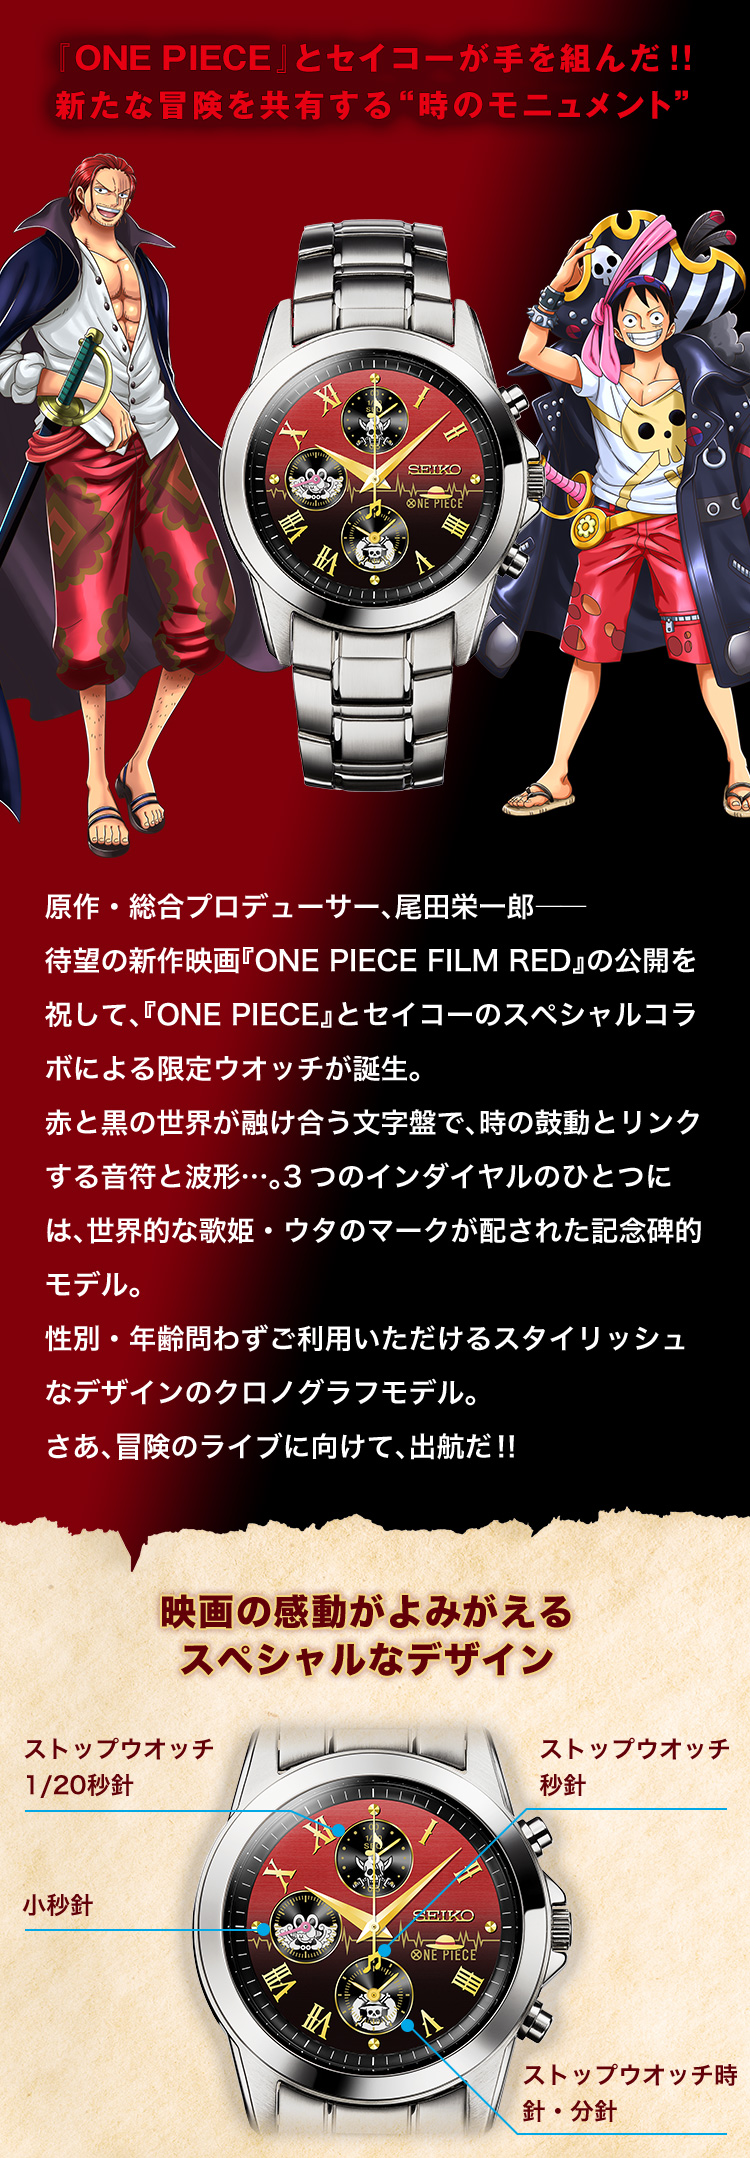 『ONE PIECE』とセイコーが手を組んだ!!新たな冒険を共有する“時のモニュメント”原作・総合プロデューサー、尾田栄一郎――待望の新作映画『ONE PIECE FILM RED』の公開を祝して、『ONE PIECE』とセイコーのスペシャルコラボによる限定ウオッチが誕生。赤と黒の世界が融け合う文字盤で、時の鼓動とリンクする音符と波形…。3つのインダイヤルのひとつには、世界的な歌姫・ウタのマークが配された記念碑的モデル。性別・年齢問わずご利用いただけるスタイリッシュなデザインのクロノグラフモデル。さあ、冒険のライブに向けて、出航だ‼